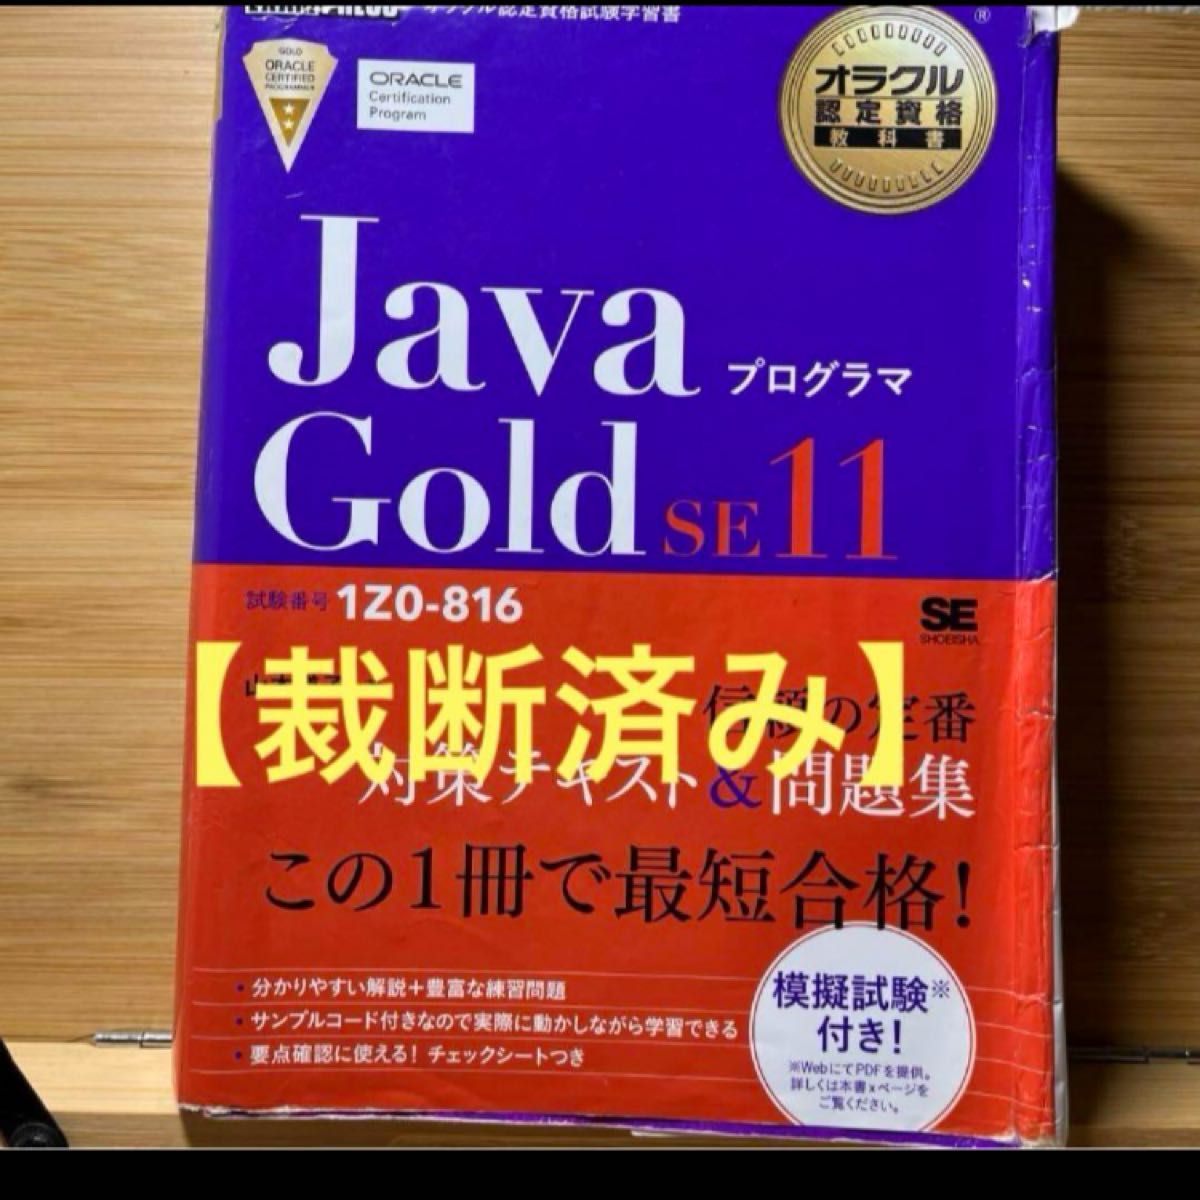 【裁断済み】オラクル認定資格教科書JavaプログラマGold SE11 1Z0